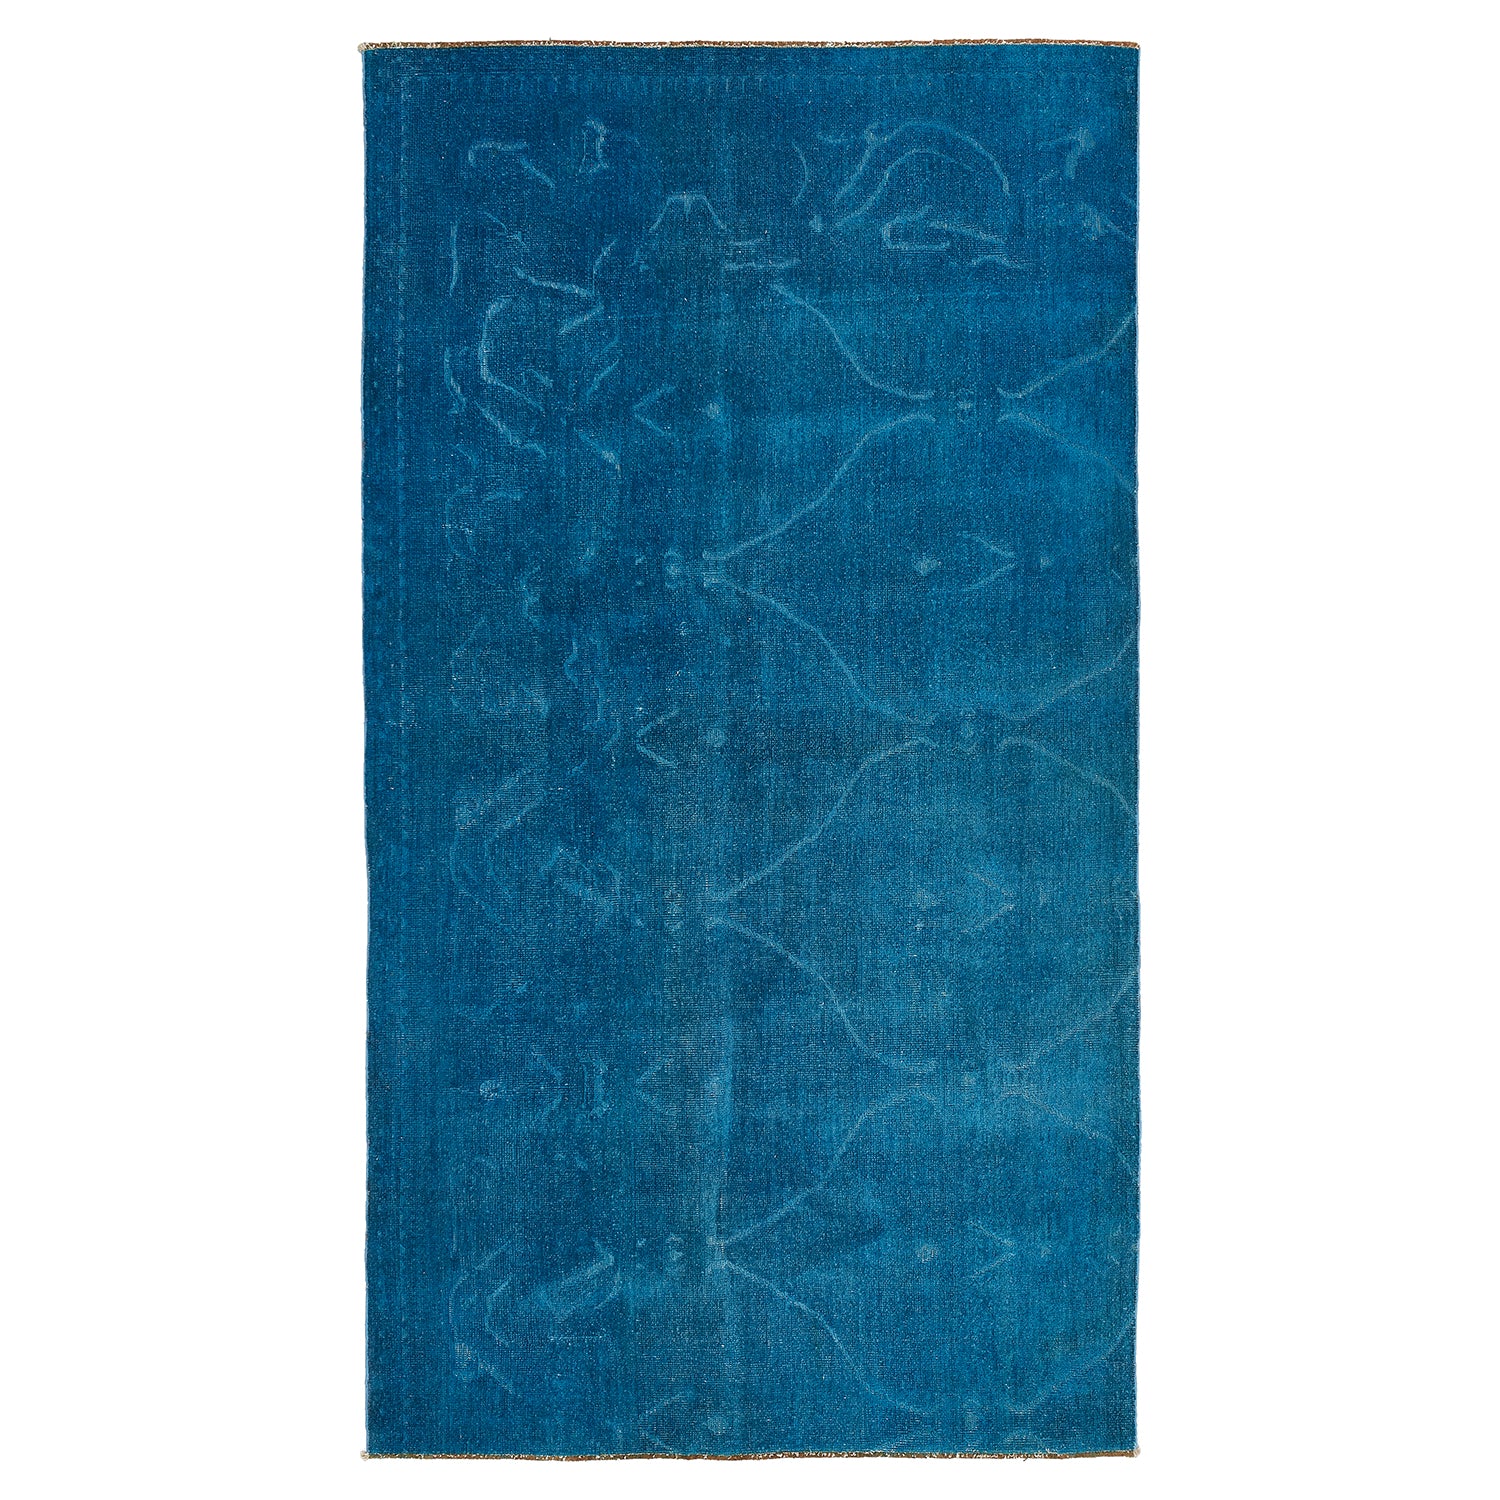 Color Reform Blue Wool Rug - 4'11" x 9'2" Default Title